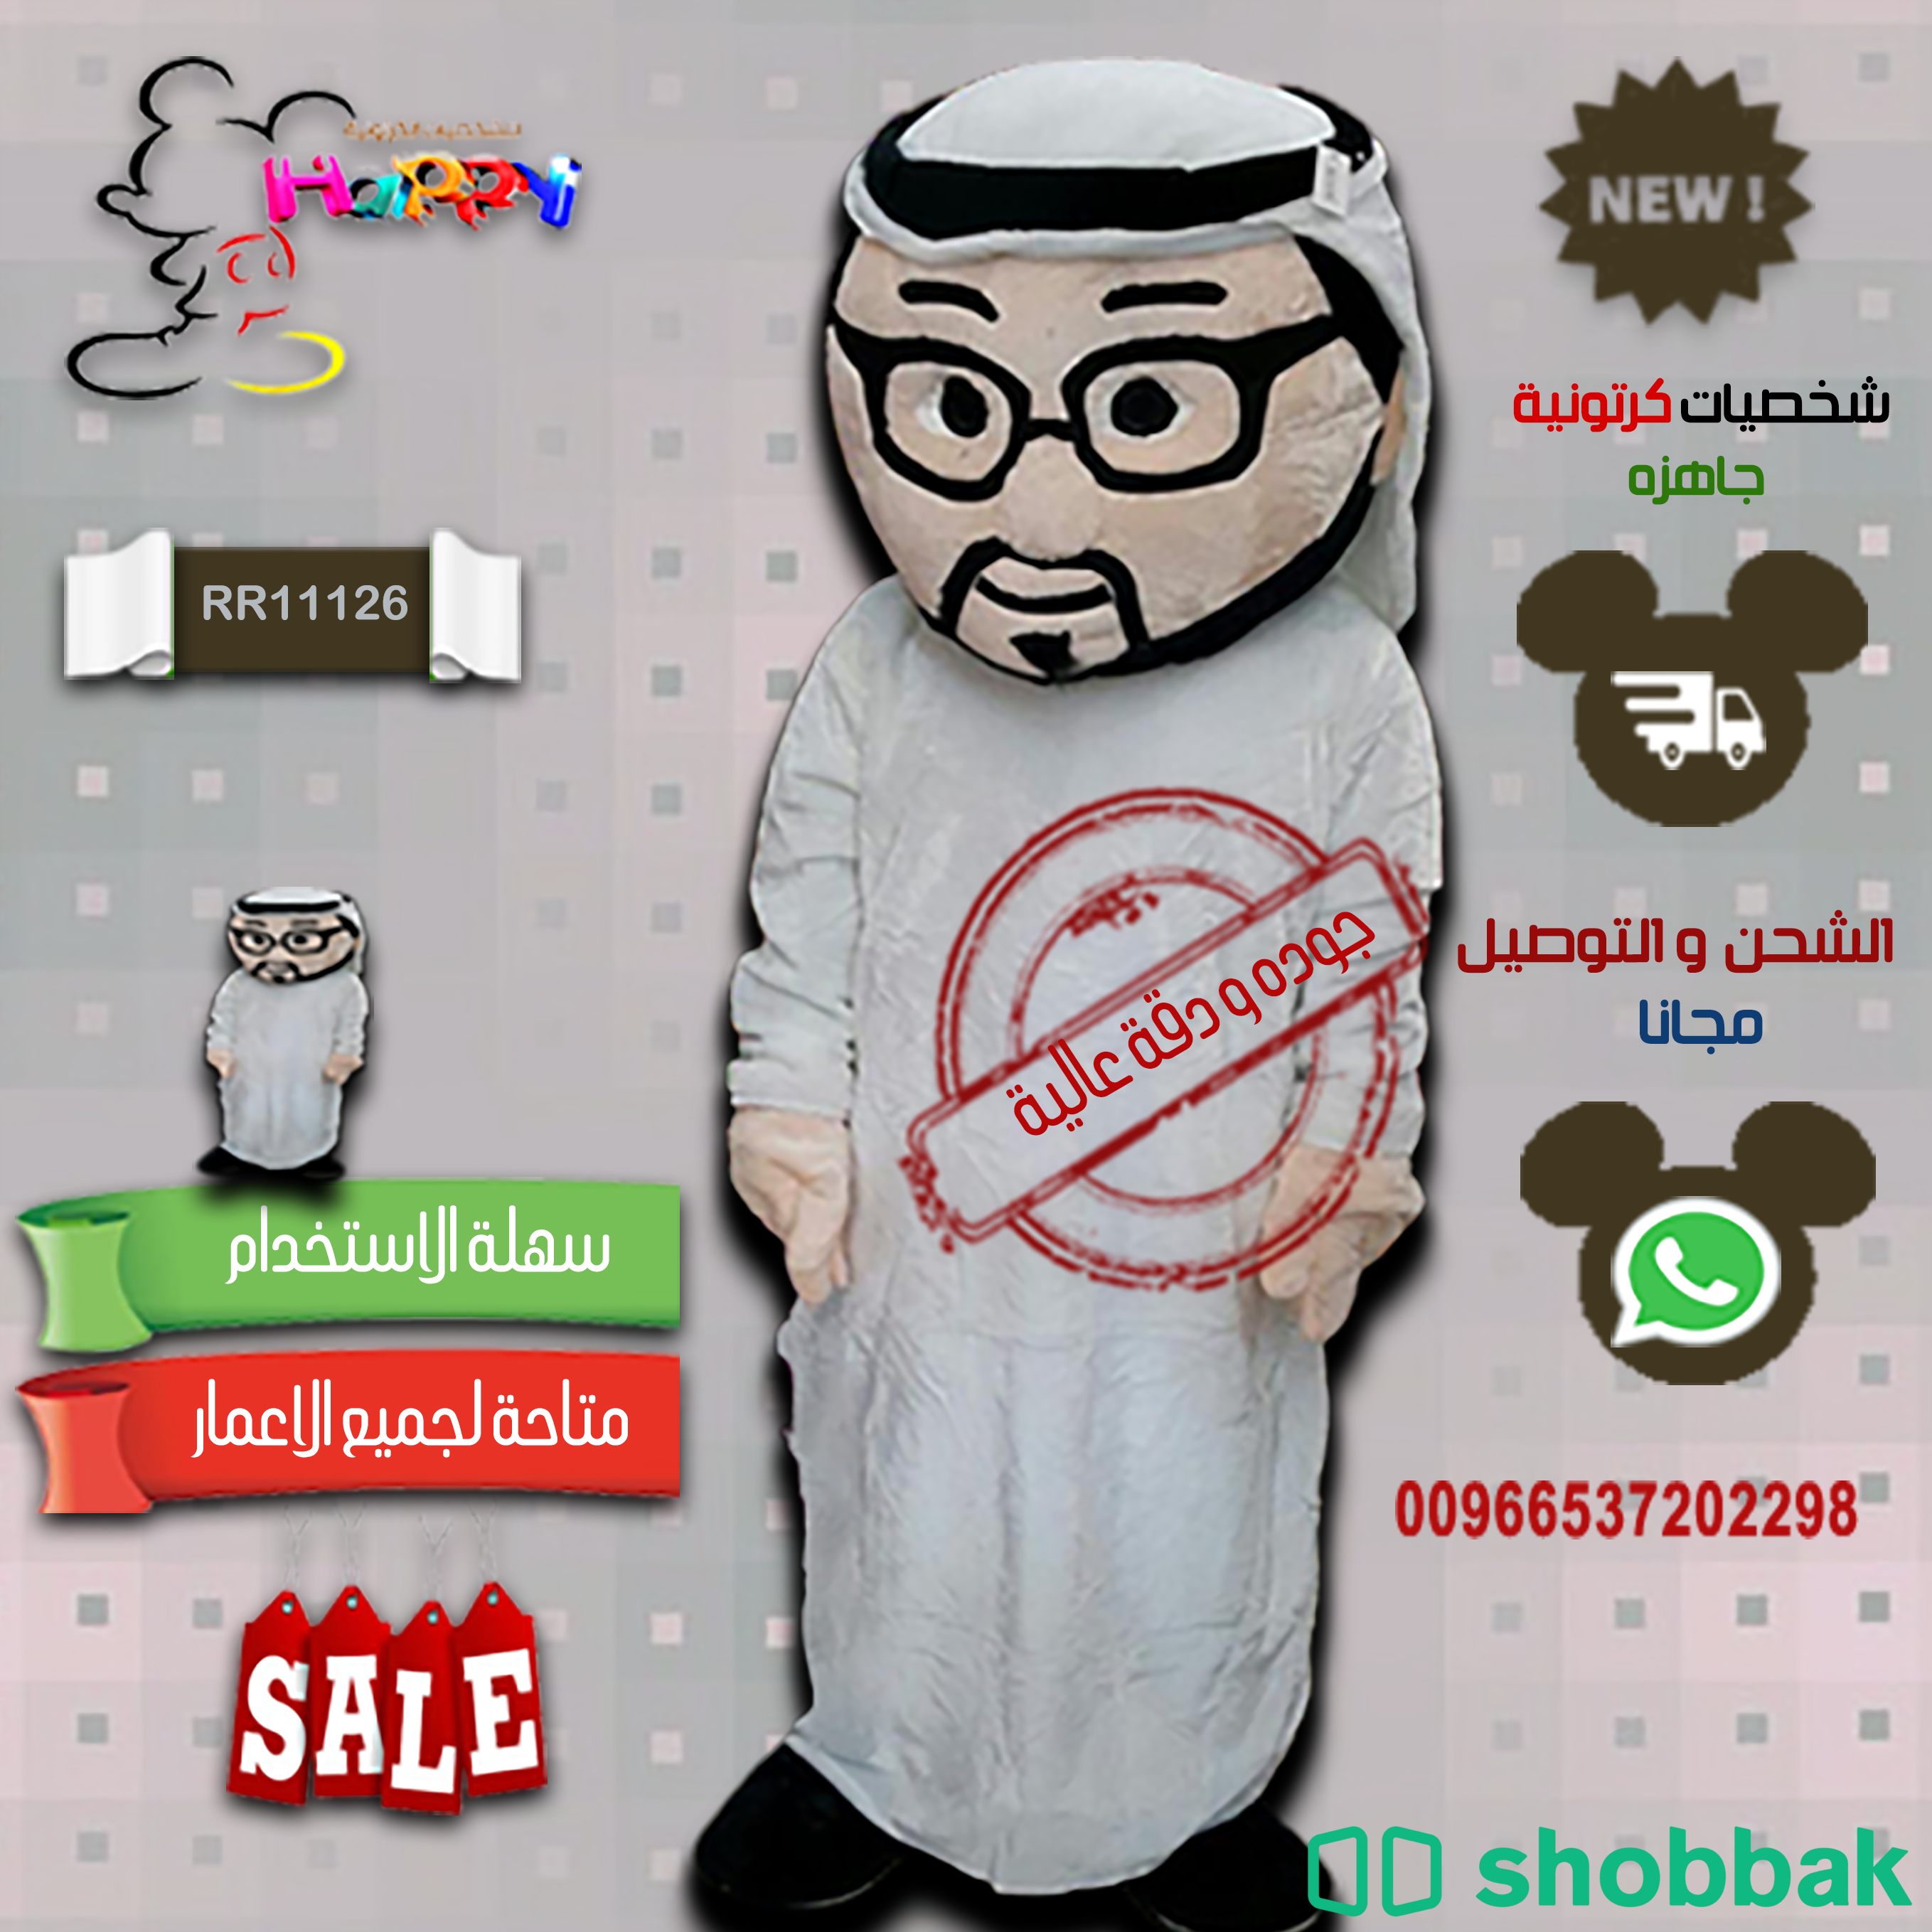 بيع شخصيات خليجيه الكرتونيه والشحن مجانا علينا Shobbak Saudi Arabia